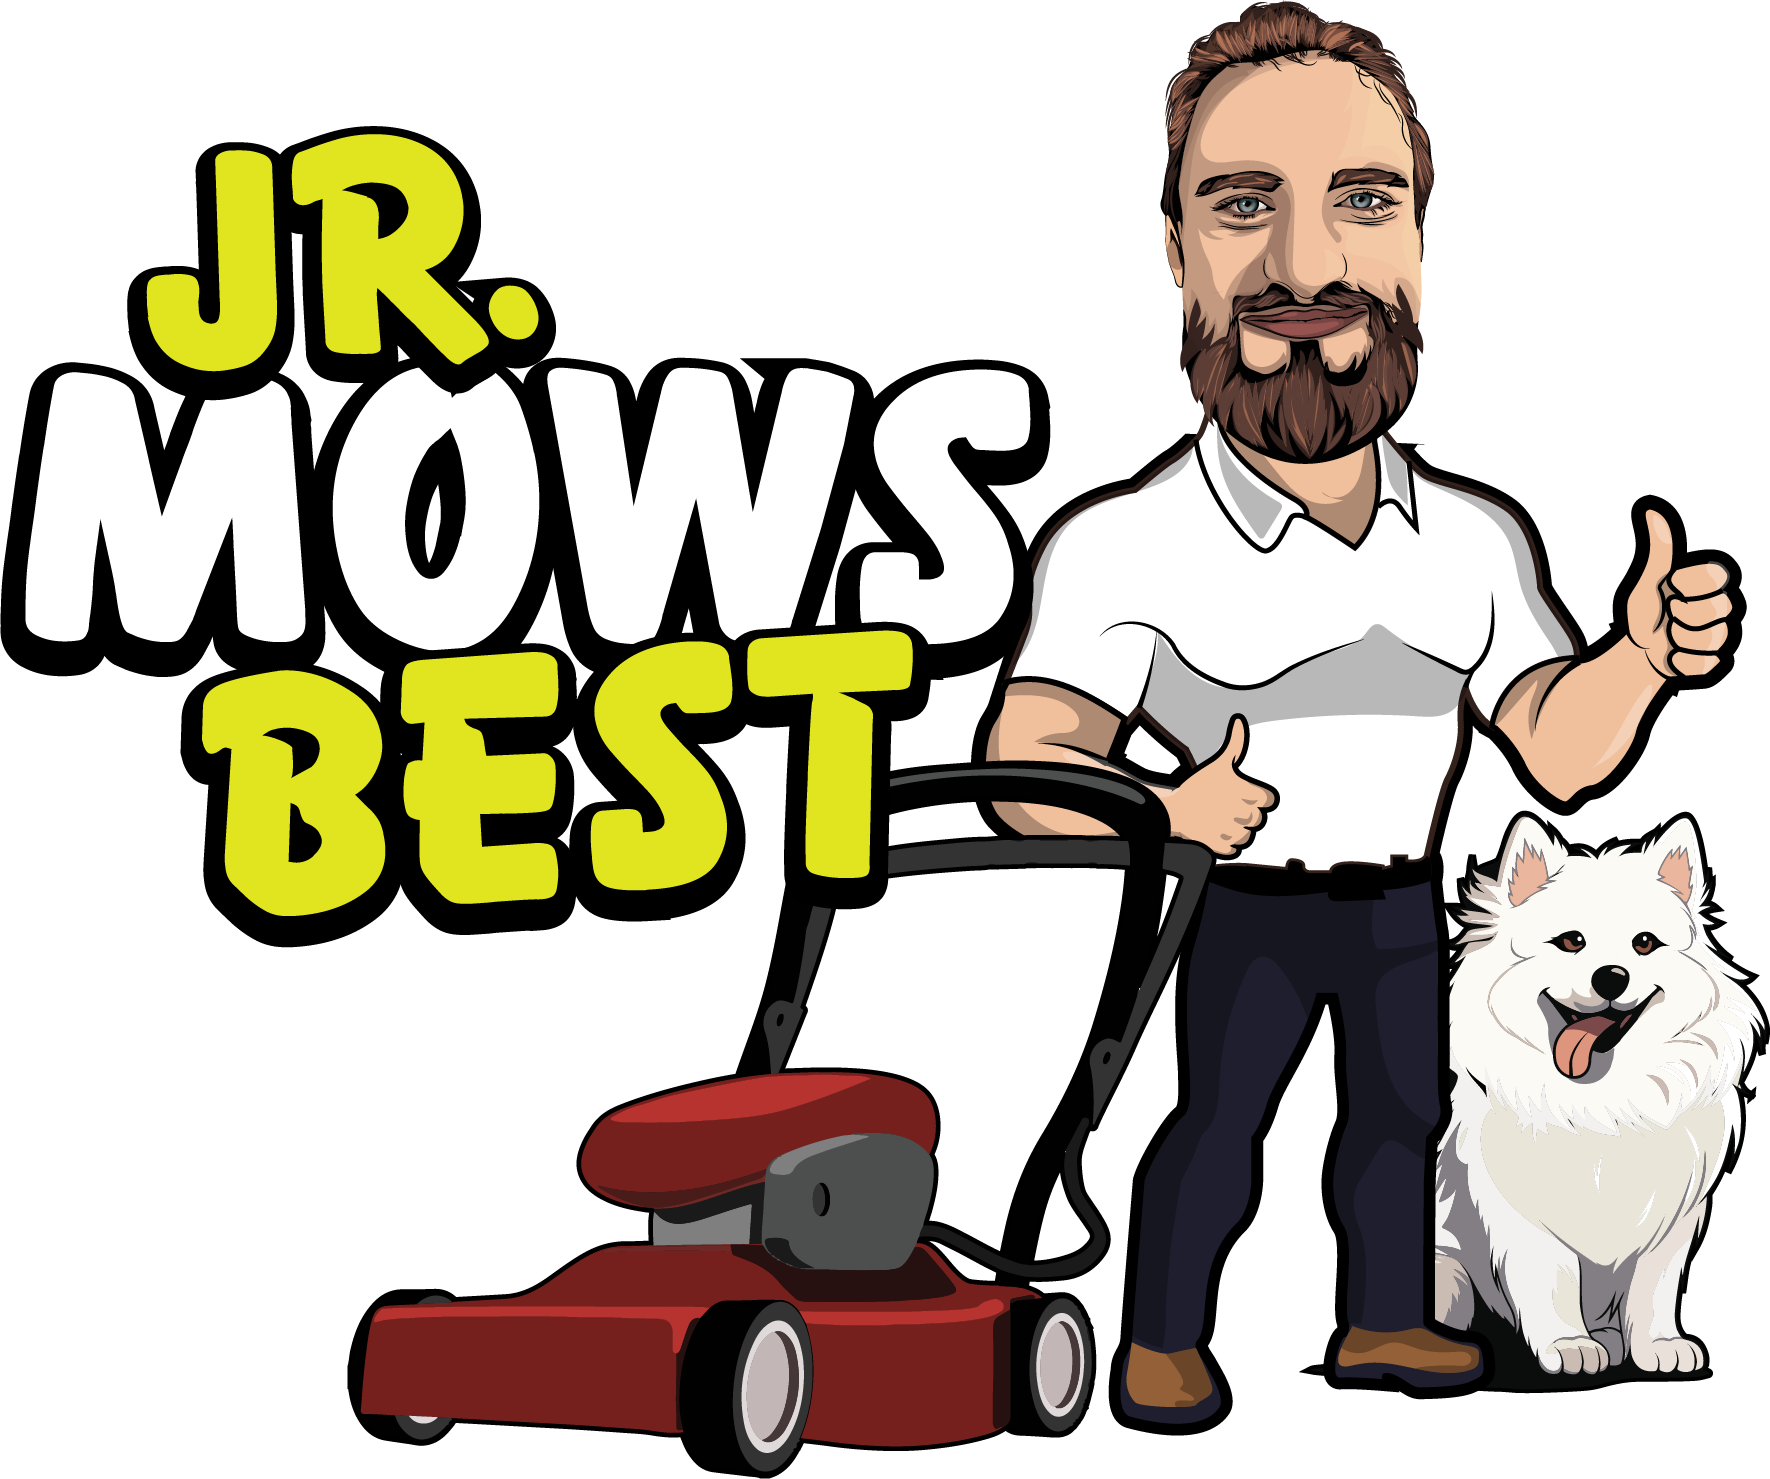 Jr Mows Best